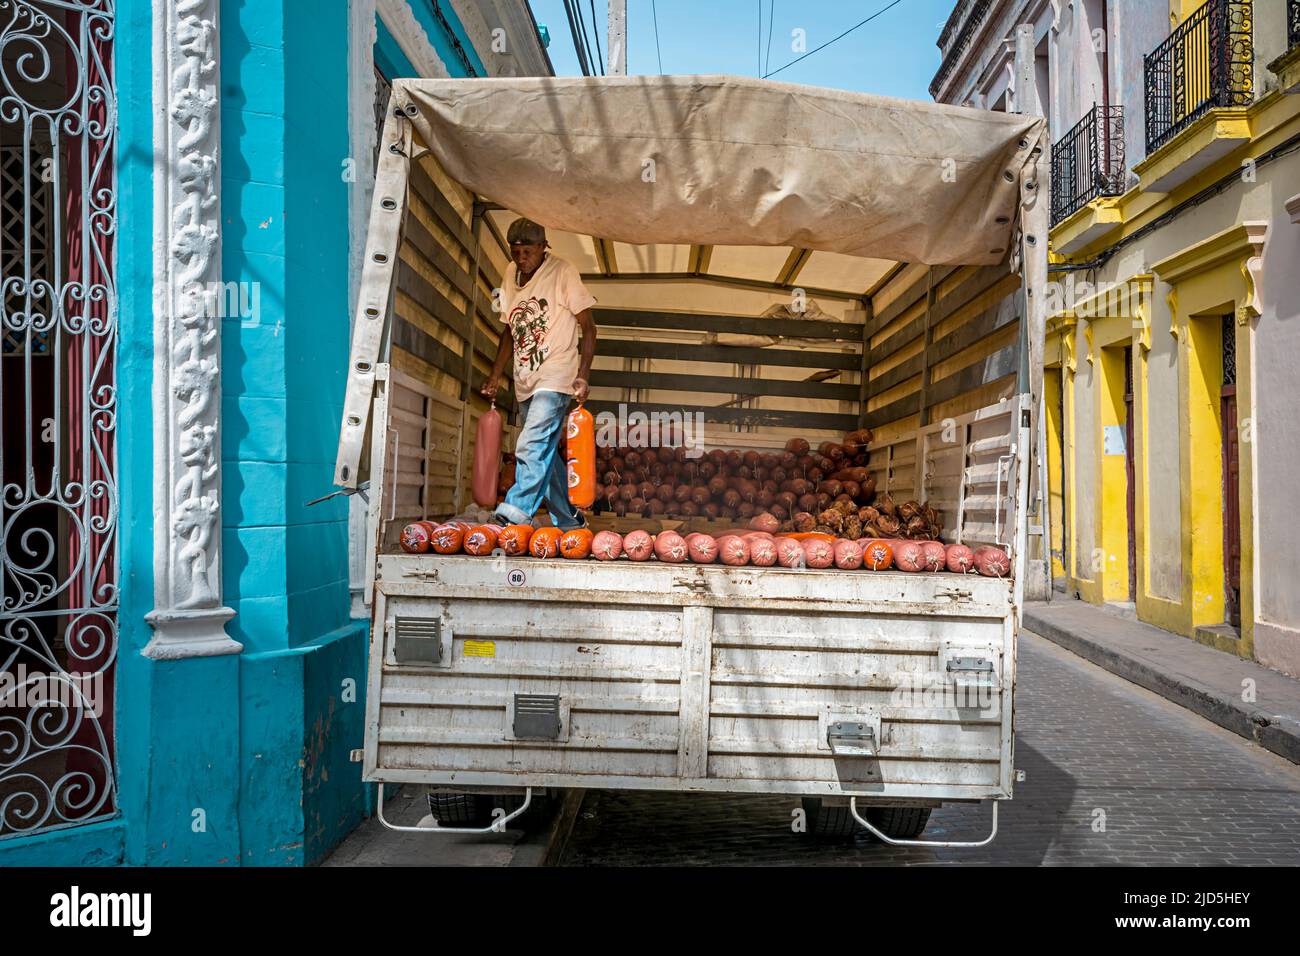 Un homme charge un camion avec de grandes saucisses dans une rue colorée à Camagüey, Cuba Banque D'Images